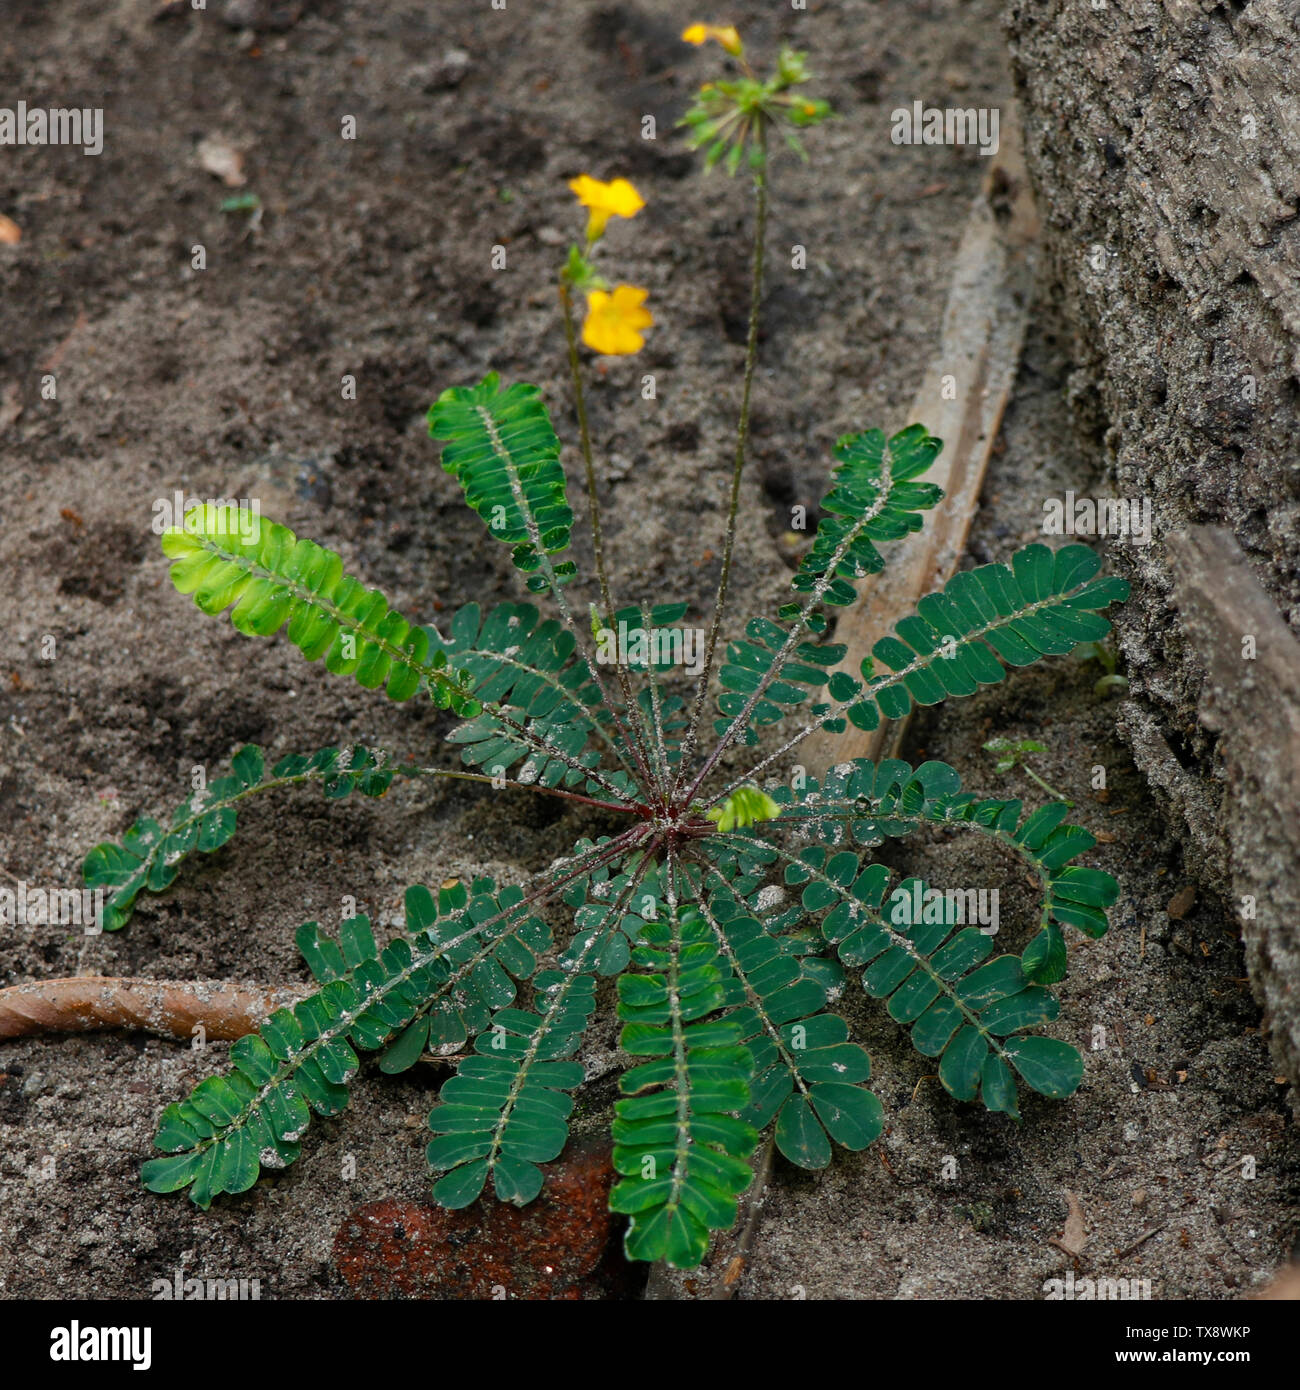 Biophytum sensitivum, auch als kleine Baum Pflanze bekannt, ist eine Pflanzenart in der Familie Oxalidaceae und gehört zu den Gattungen Biophytum. Stockfoto